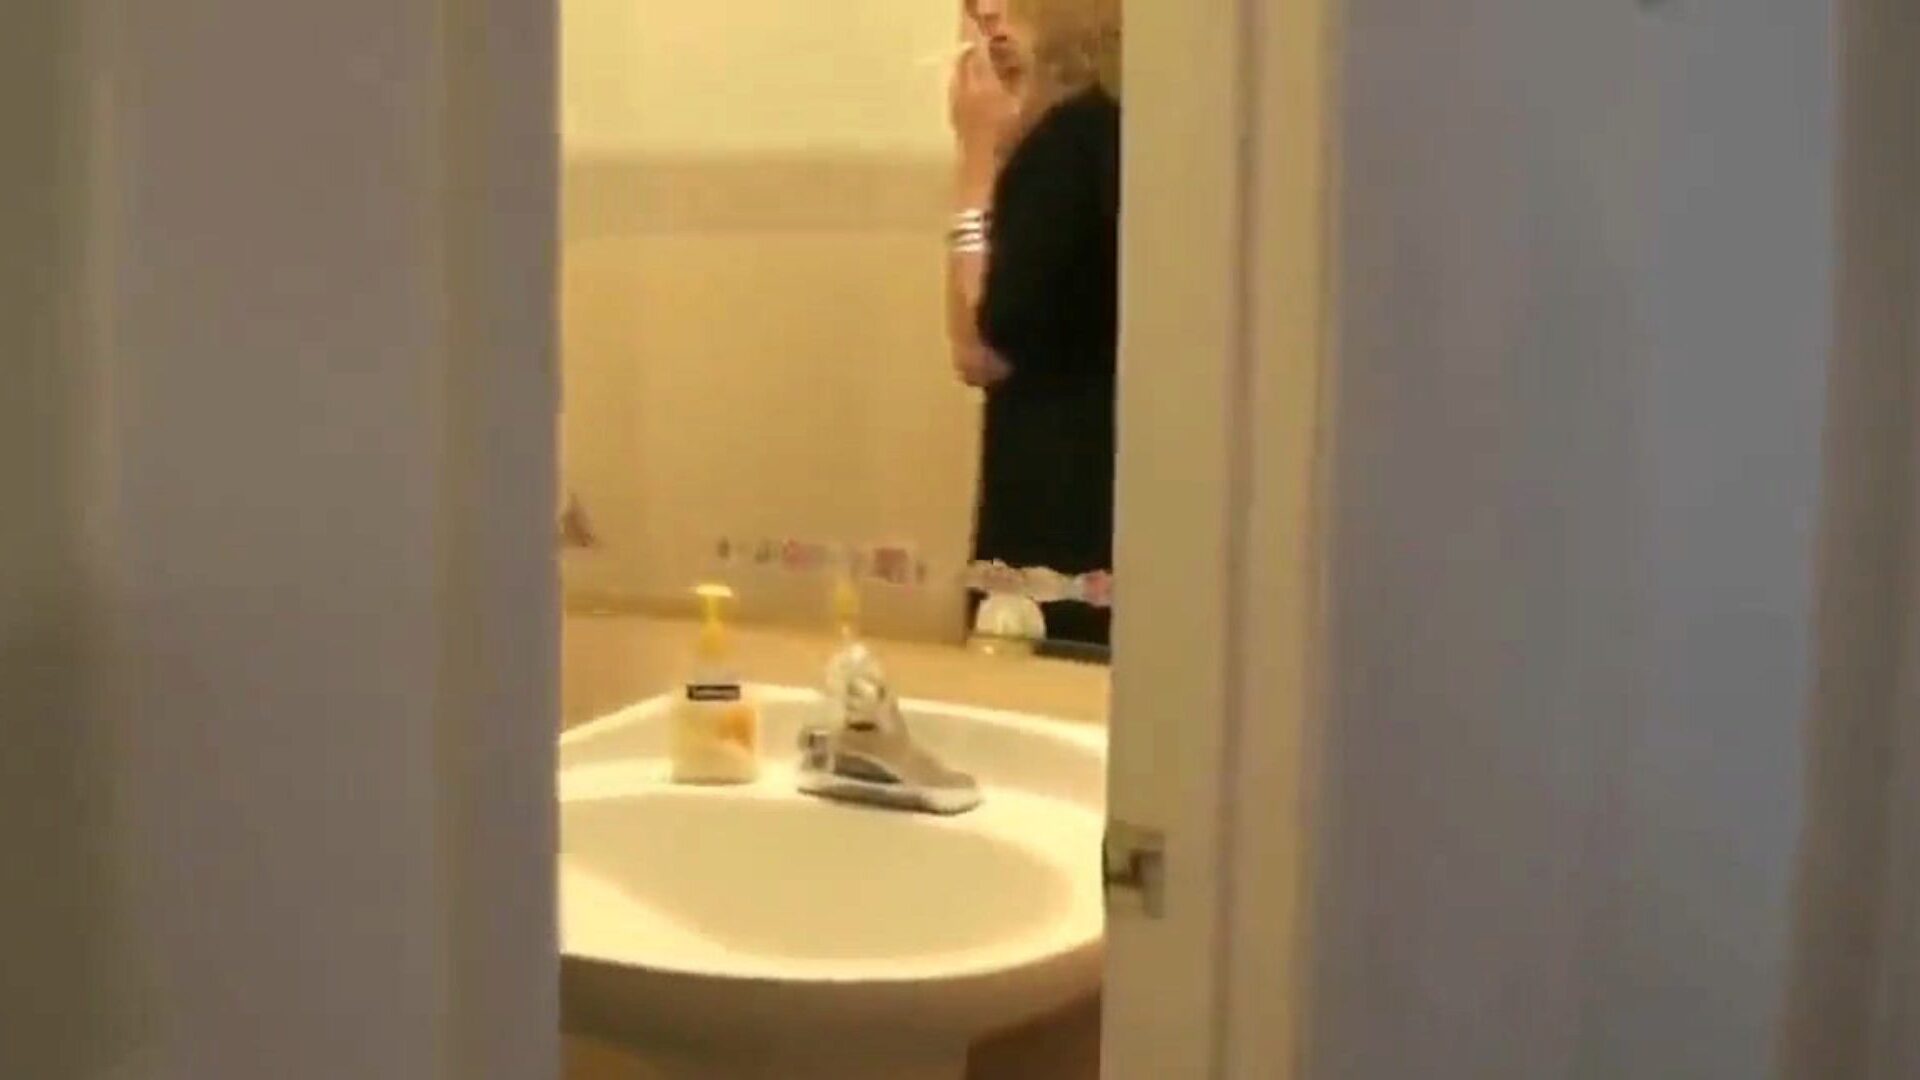 rauchende Mutter erwischt Sohn, der sie im Badezimmer ausspioniert ... Sieh zu, wie rauchende Mutter ihren Sohn erwischt, wie er sie im Badezimmer ausspioniert